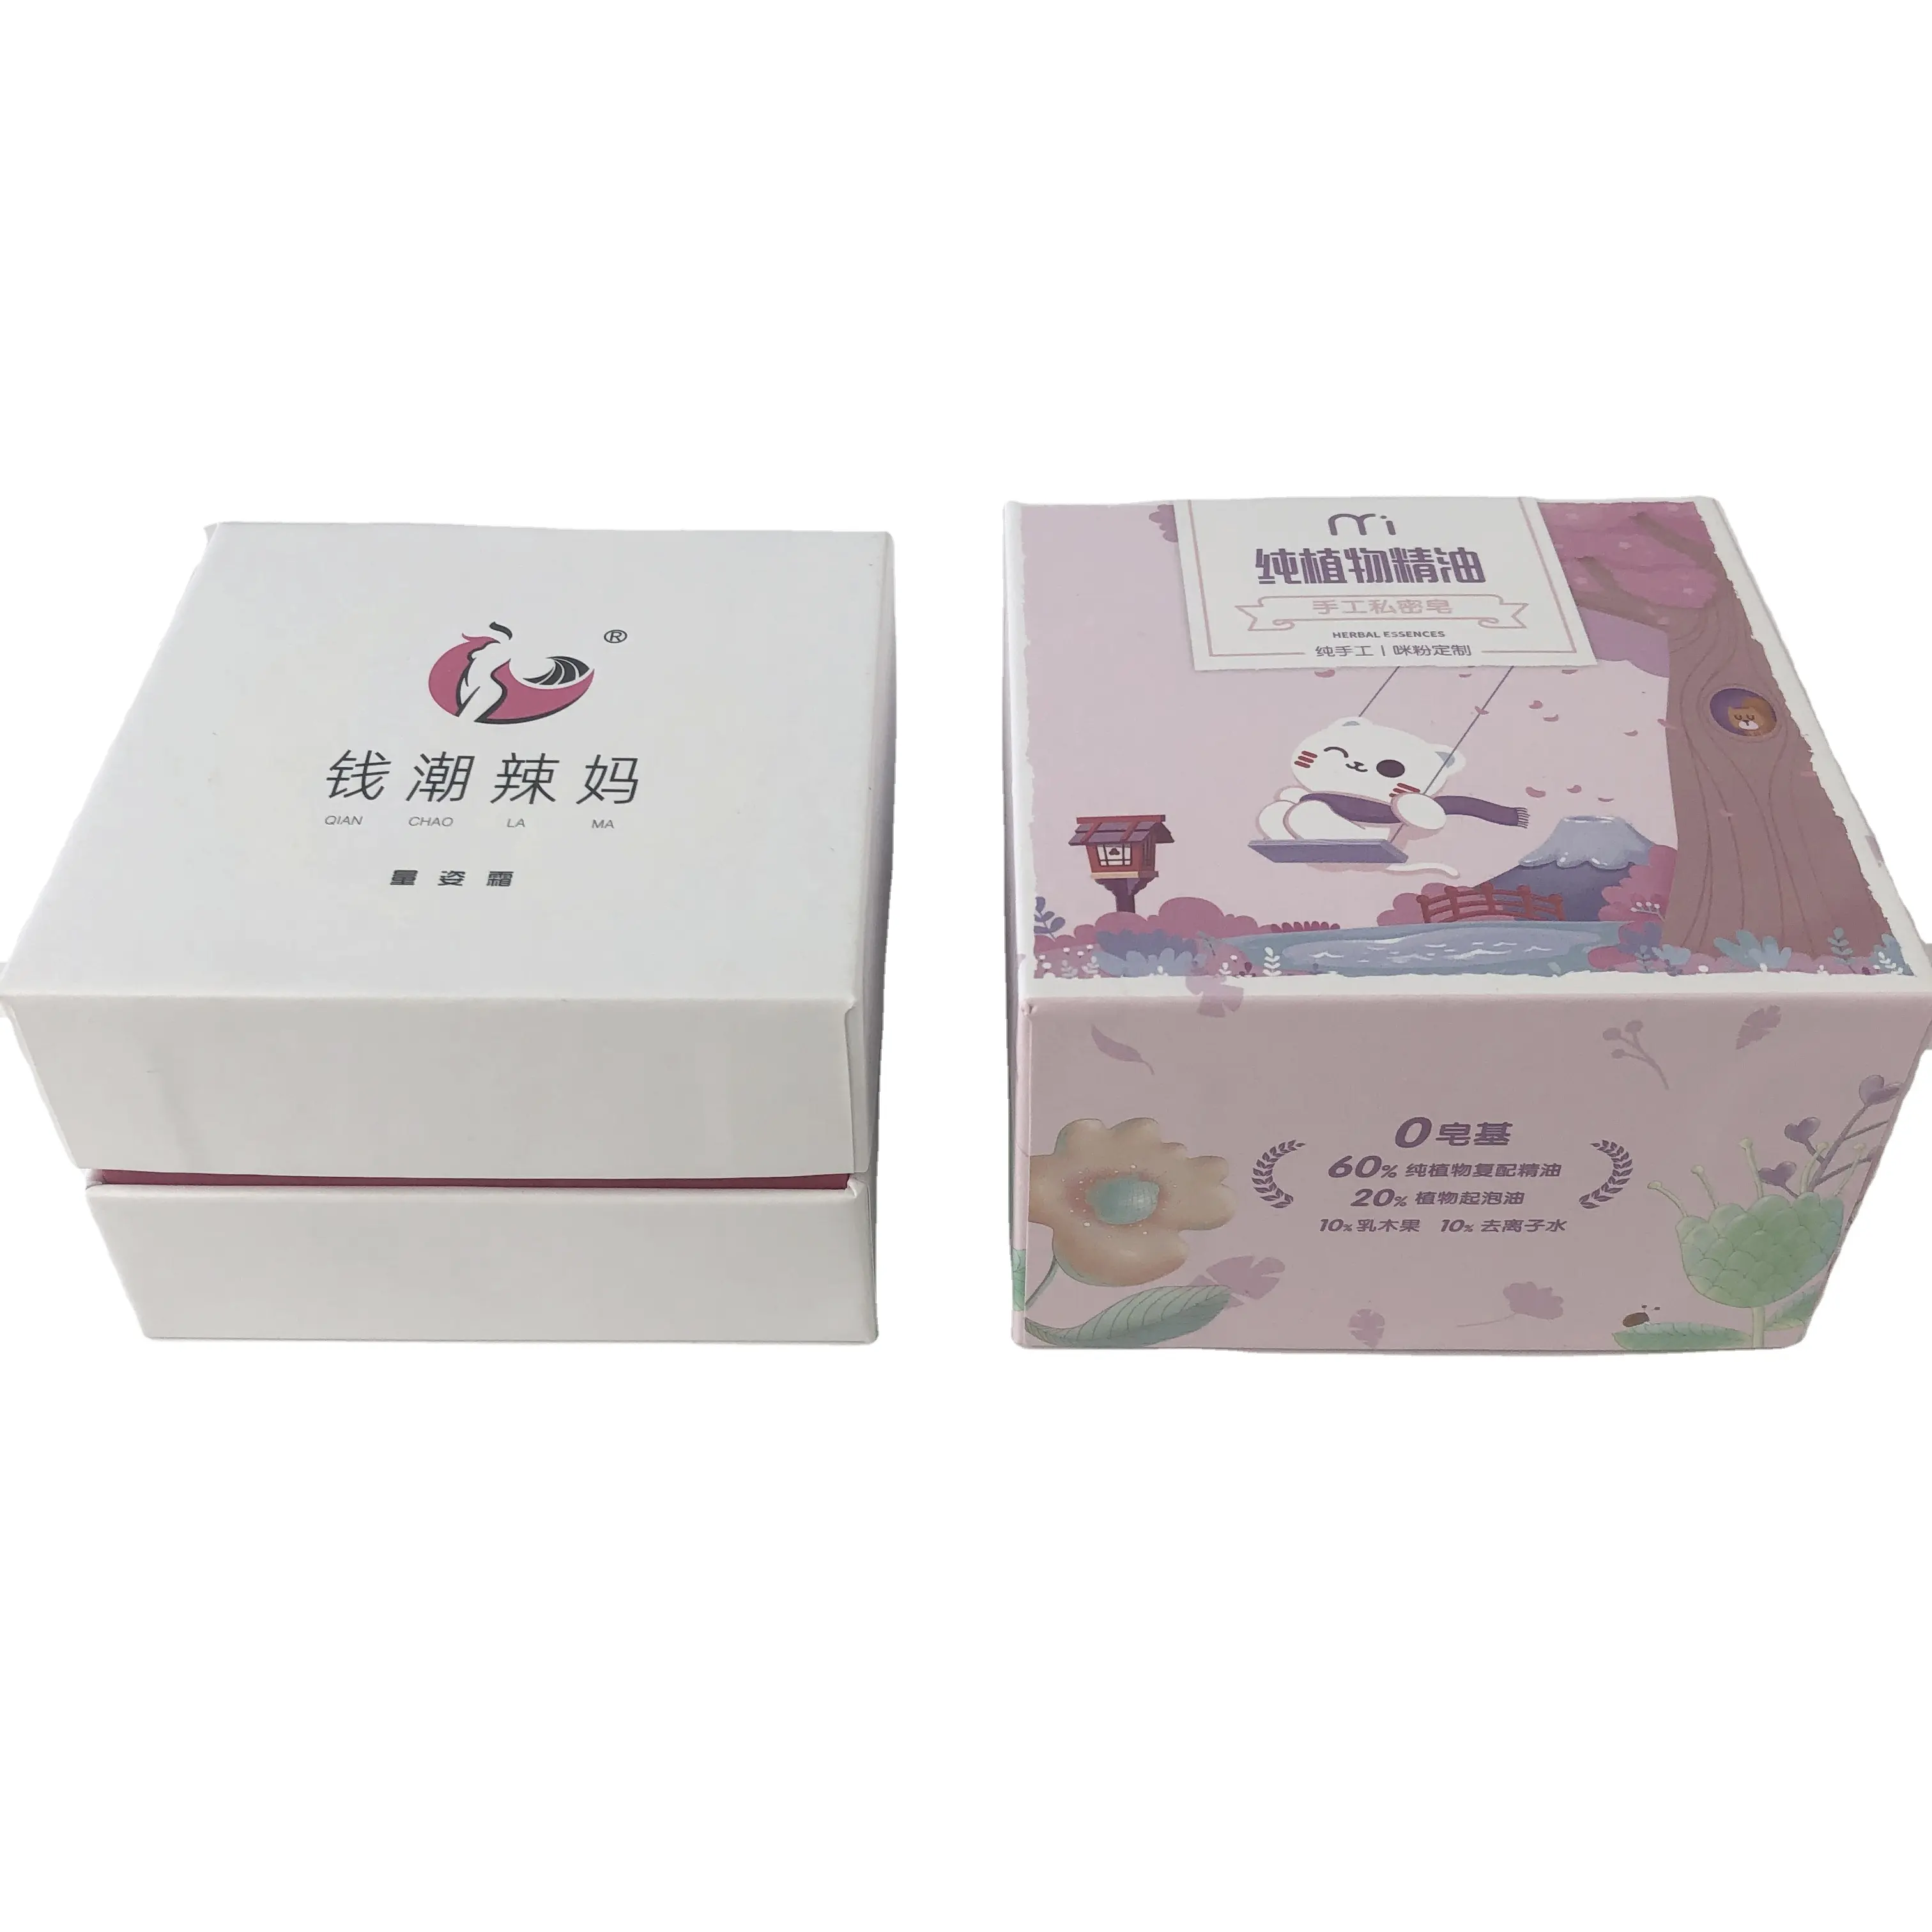 Özel Logo baskı sert tahta kuşe kağıt cilt bakım ürünü seti seti hediye kutusu kozmetik sabun ambalajı kutusu